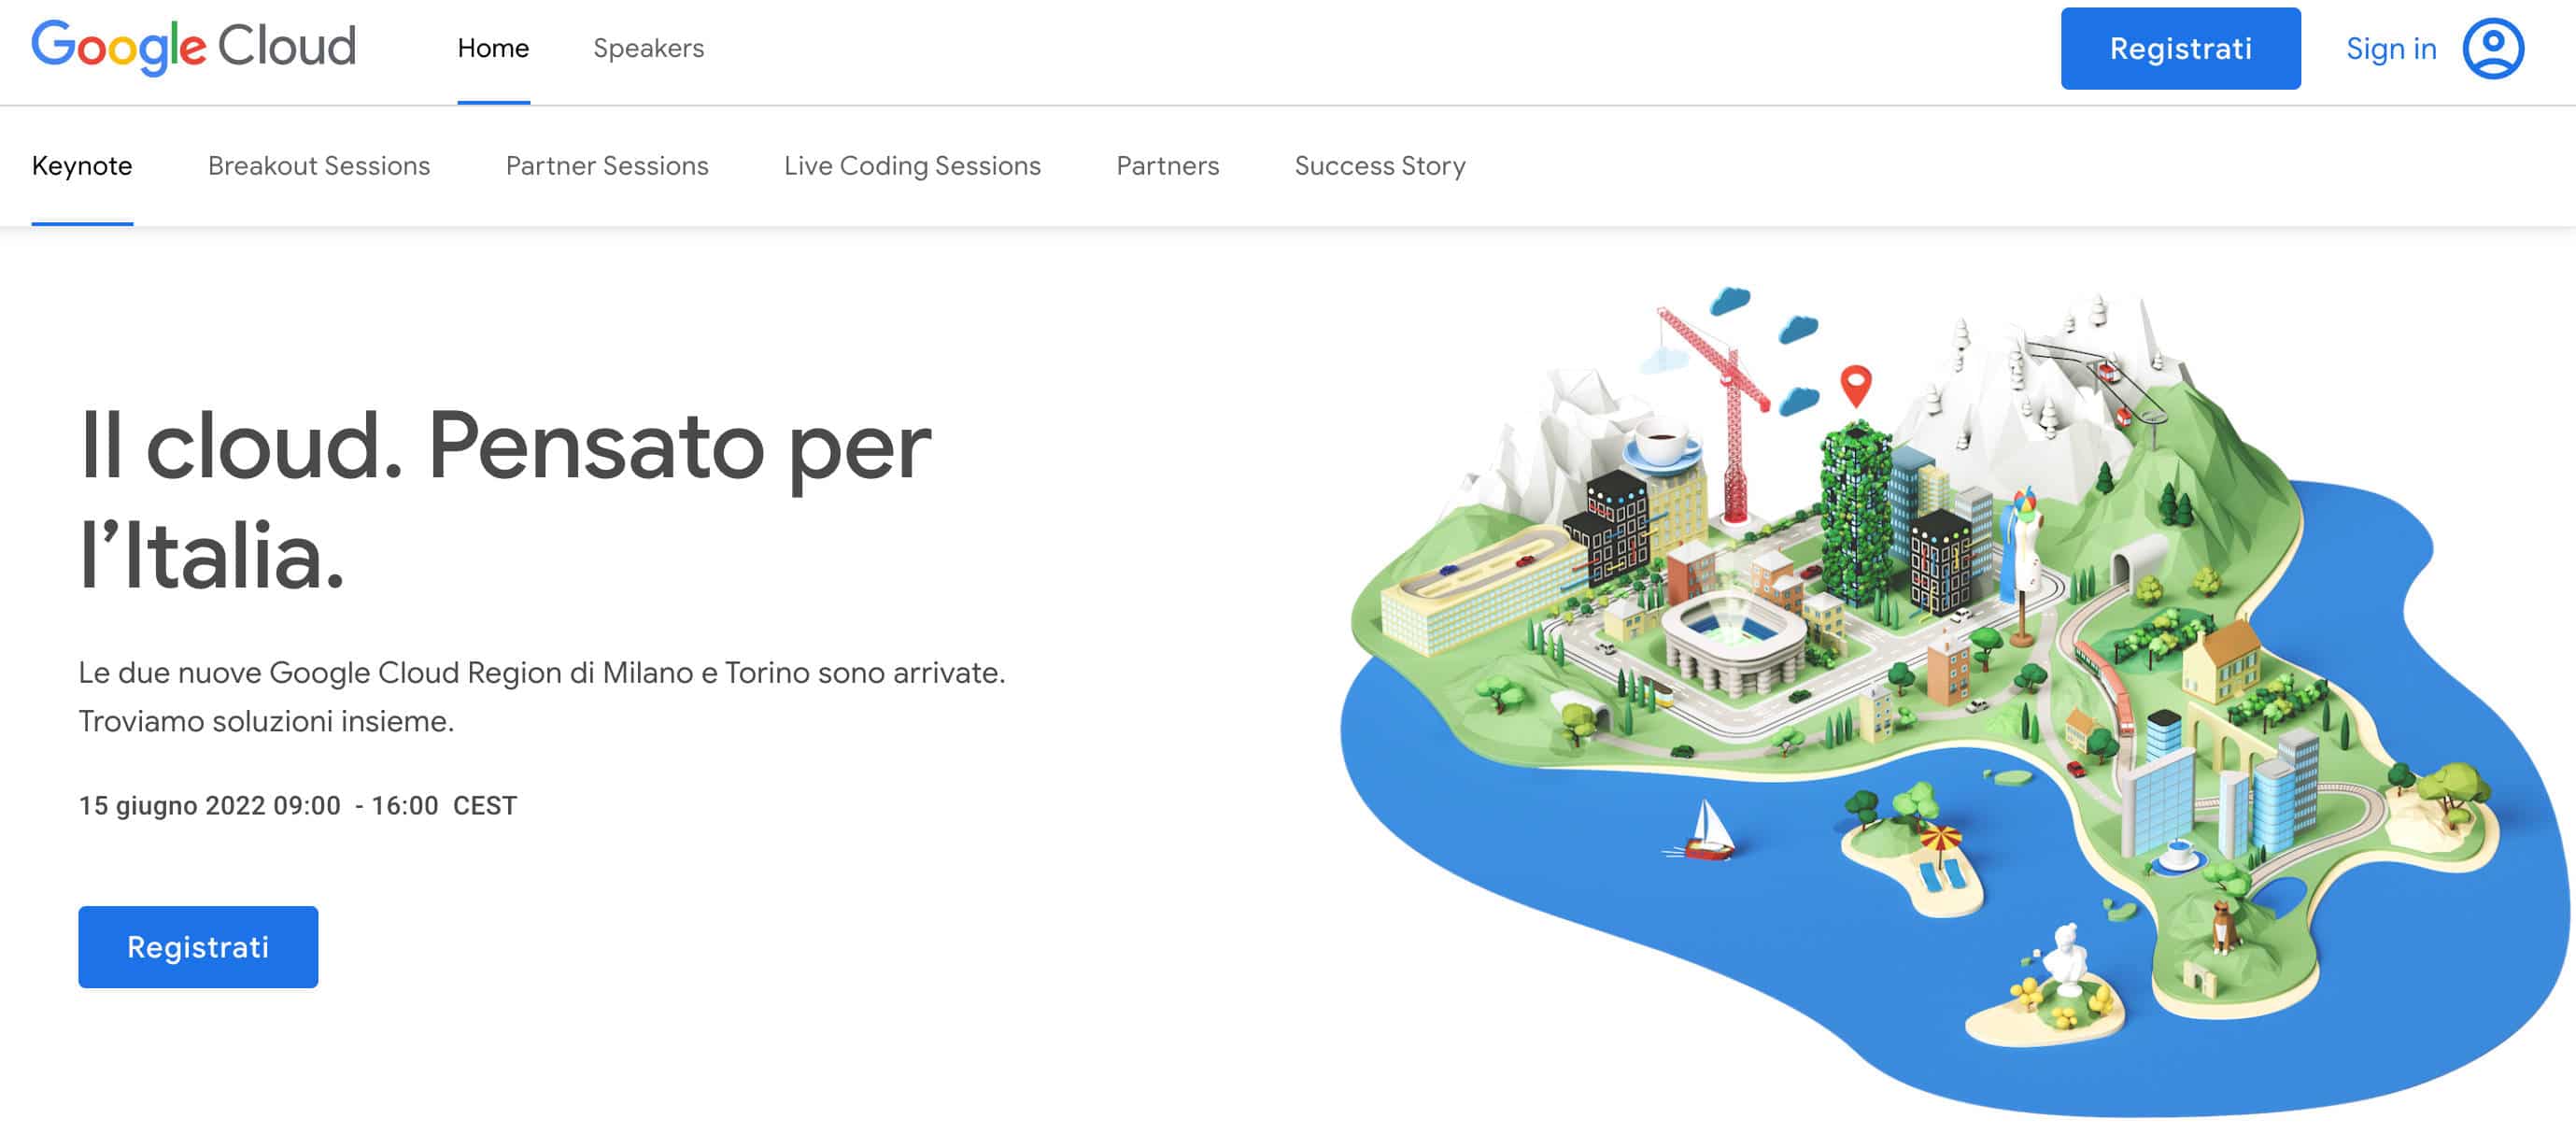 Immagine che mostra la home page dell'evento di presentazione dei nuovi data center di Milano e Torino